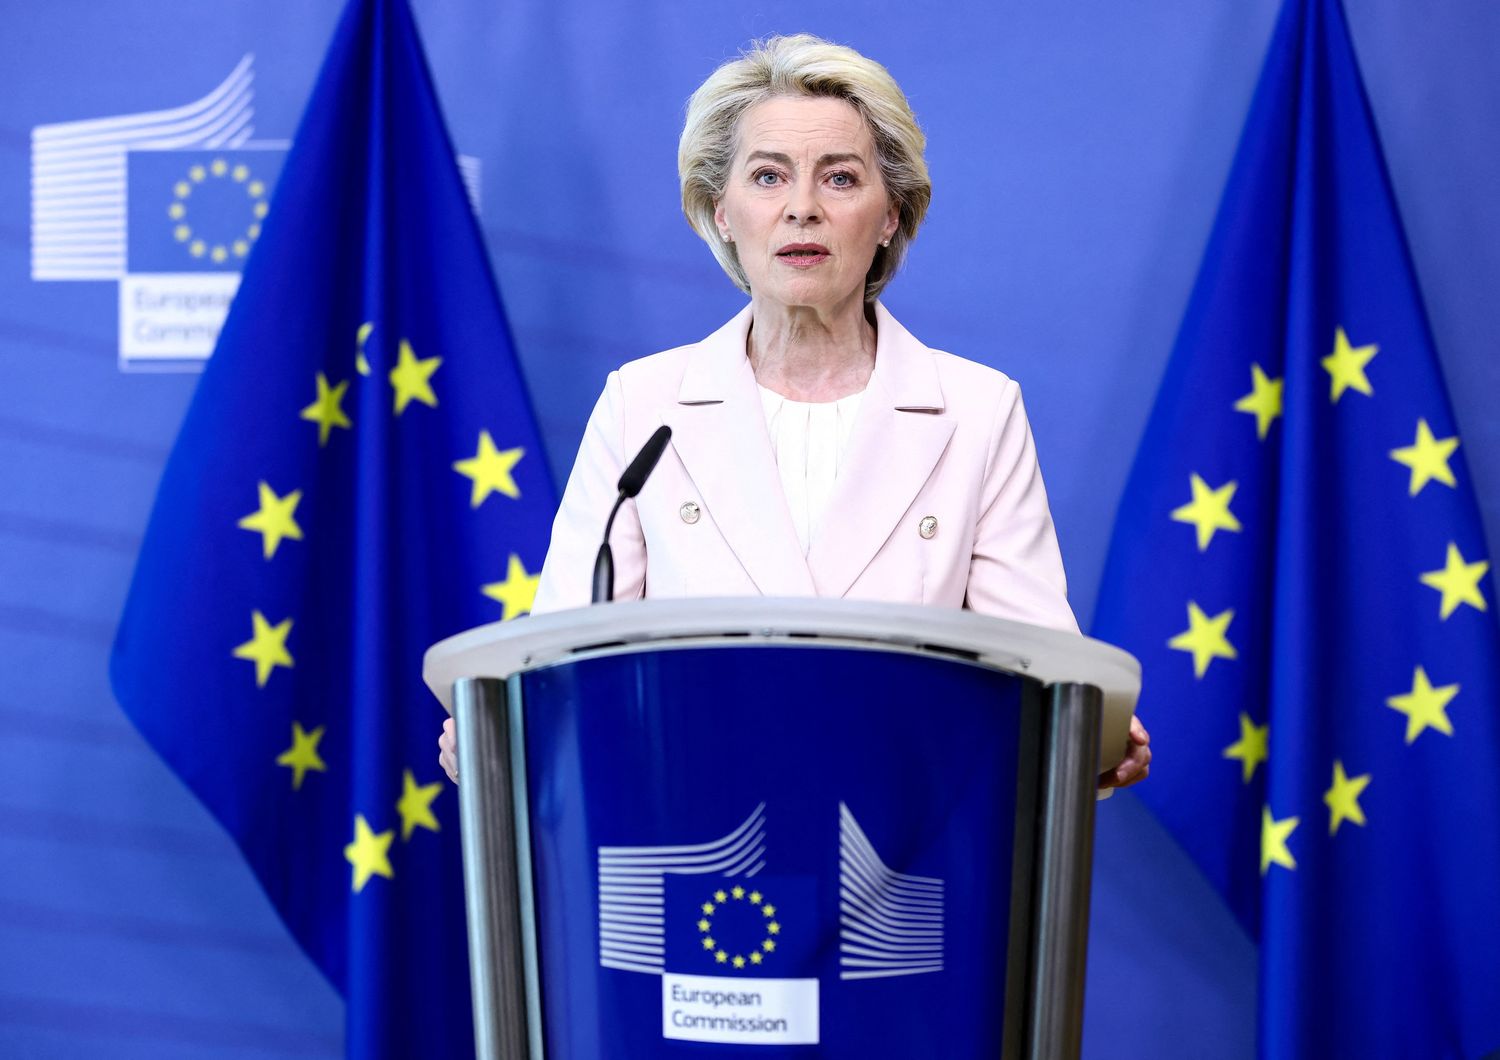 La presidente della Commissione europea Ursula von der Leyen&nbsp;